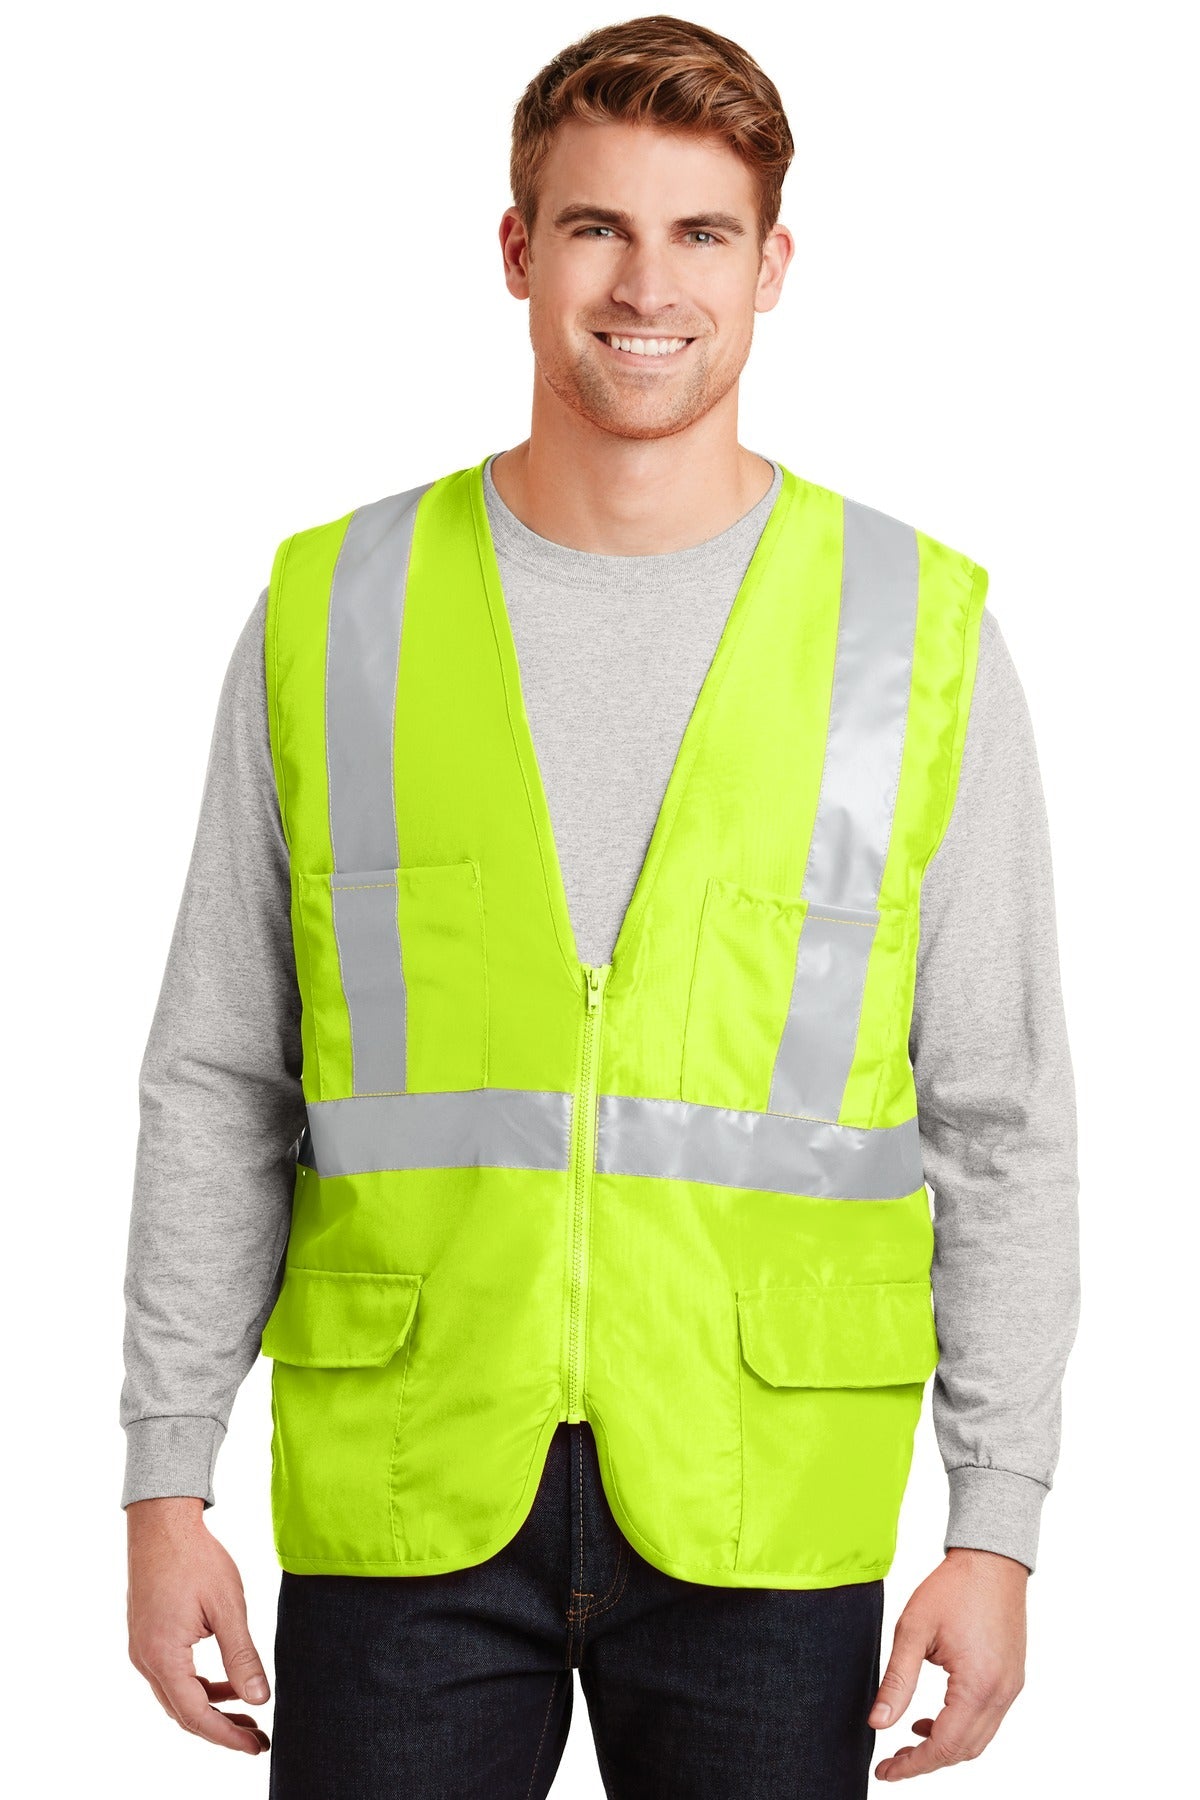 CornerStone® - ANSI 107 Class 2 Mesh Back Safety Vest. CSV405 - DFW Impression